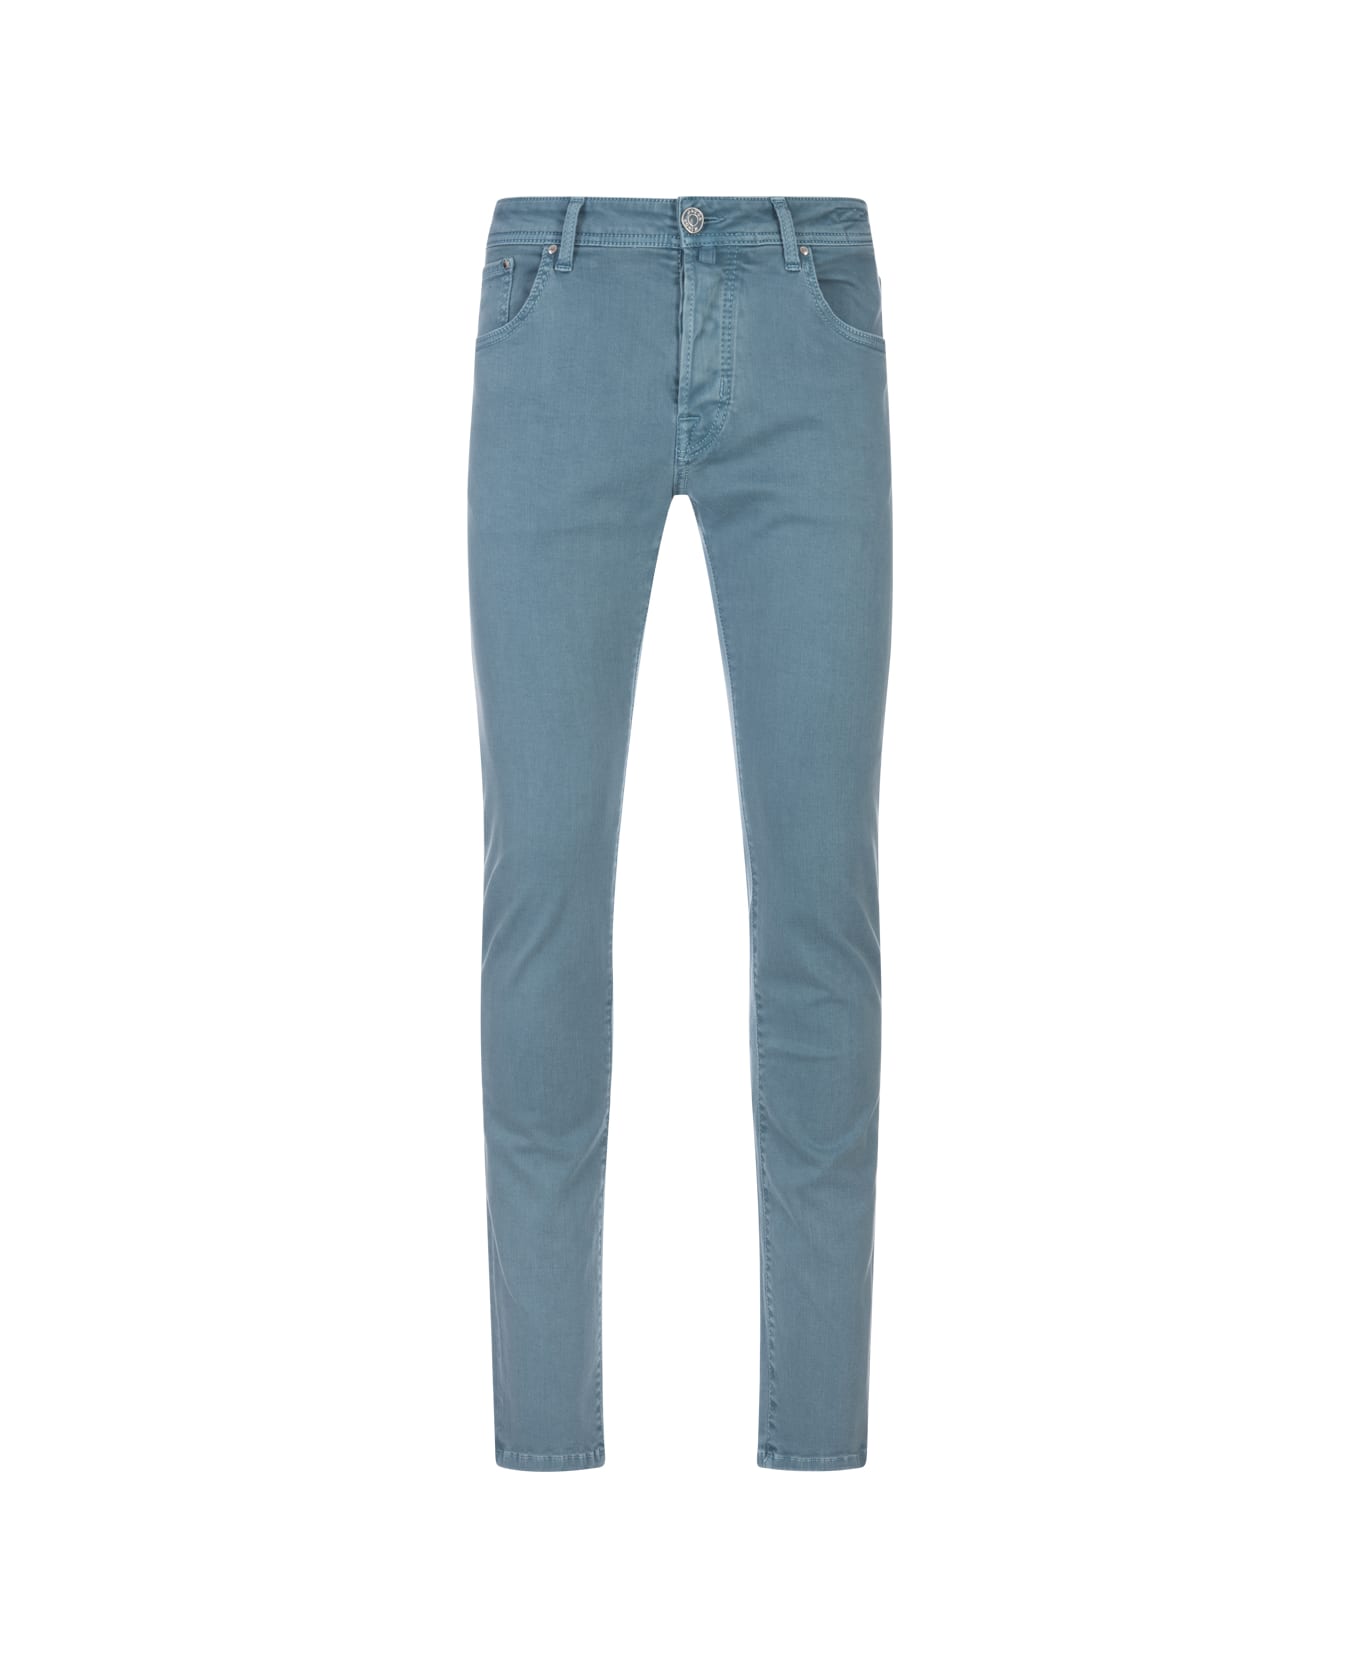 Jacob Cohen Nick Slim Fit Jeans In Teal Blue Denim - Blue